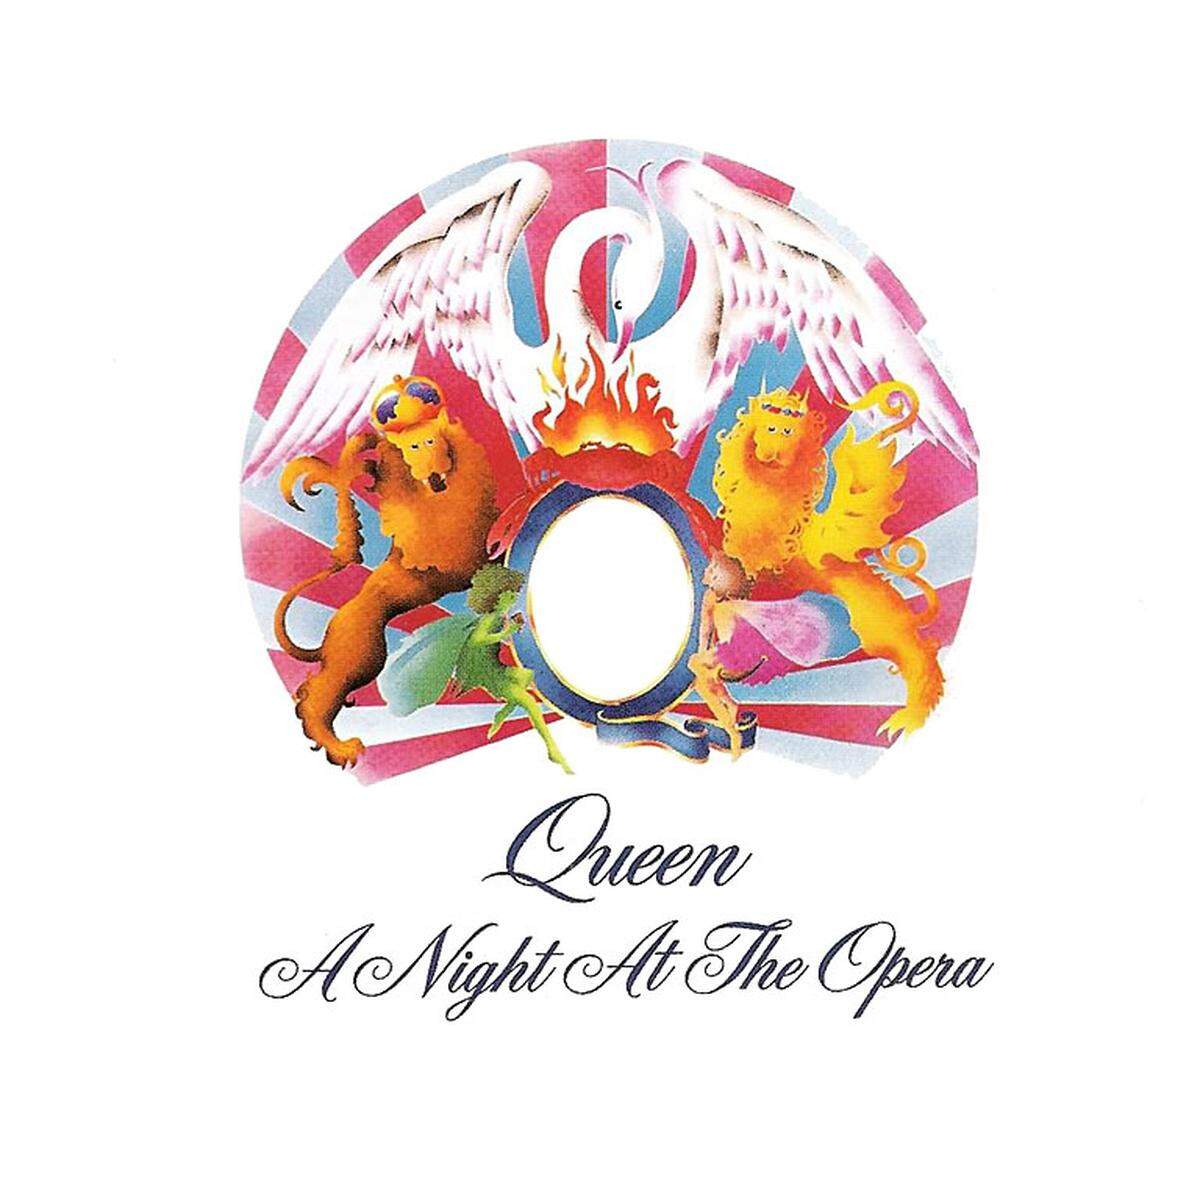 An Queen scheiden sich die Pop-Geister. Grandezza hatte Freddie Mercury, das ist unbestritten. "A Night Of The Opera" (1975) scheint in Listen à la "Alben, die man vor dem Tod gehört haben sollte" auf. Finden wir auch.